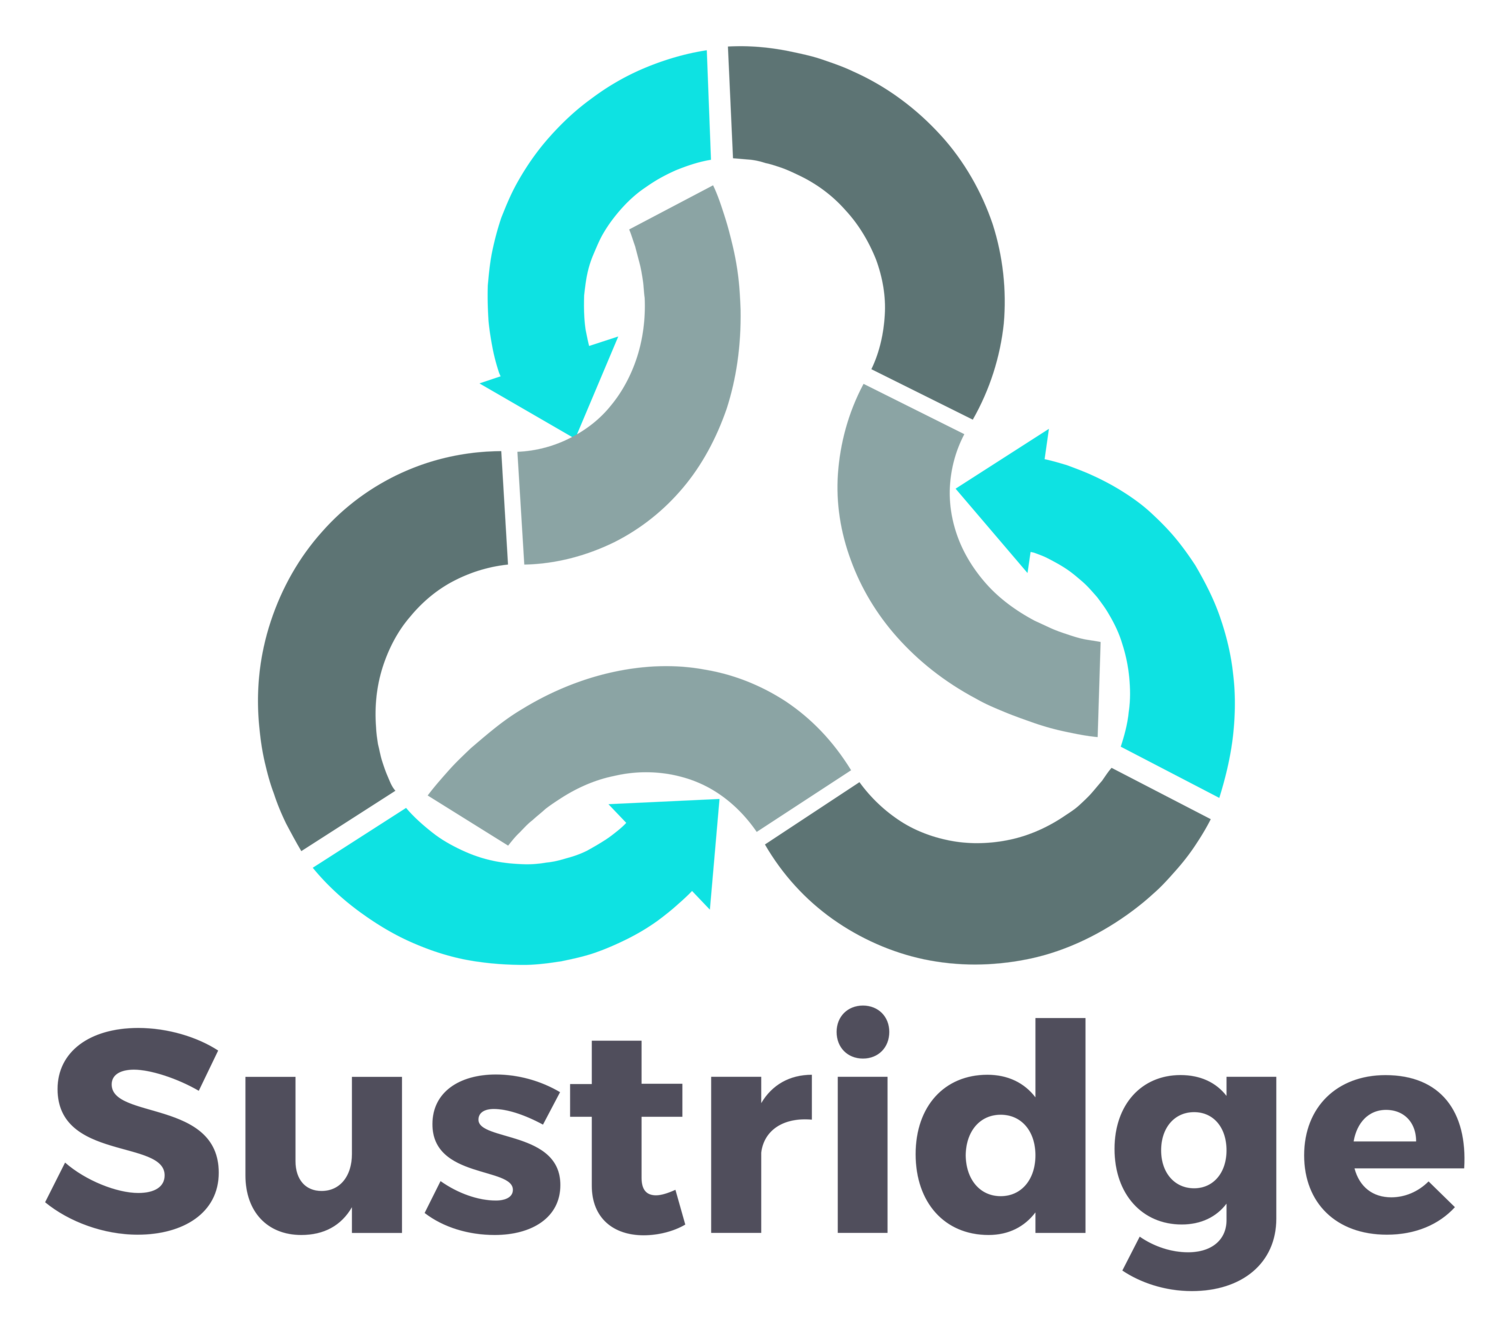 Sustridge Sustainability Consulting